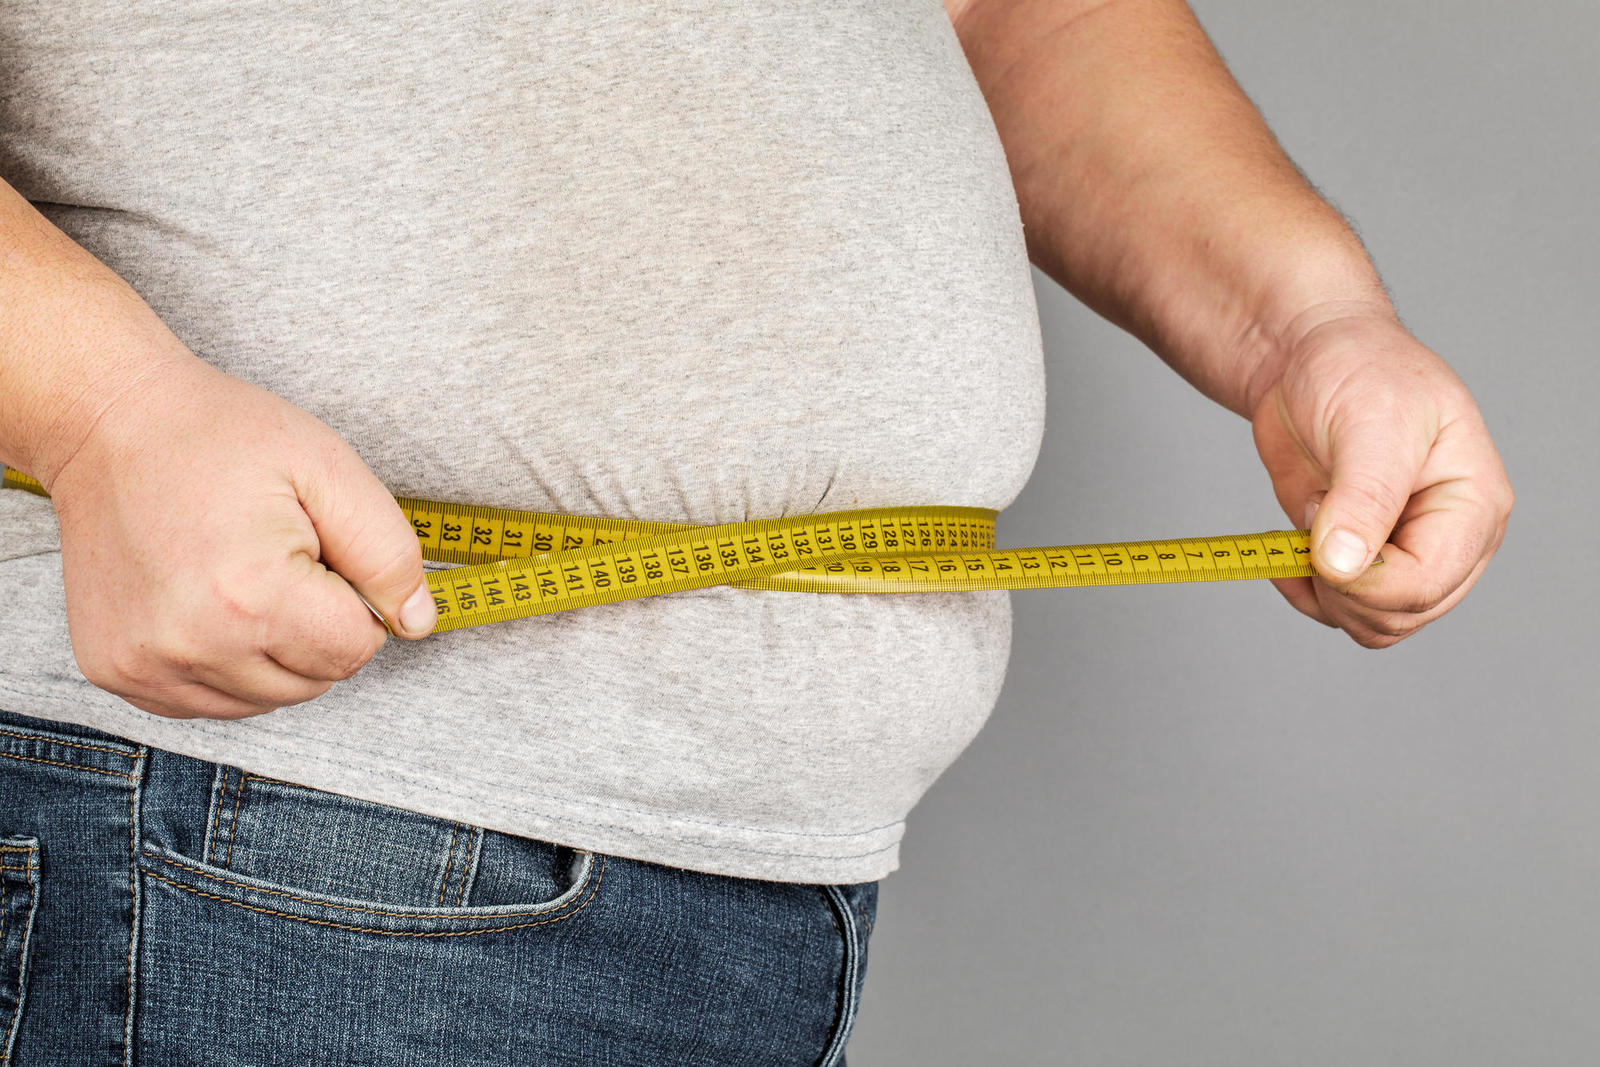 Более половины взрослых израильтян имеют избыточный вес